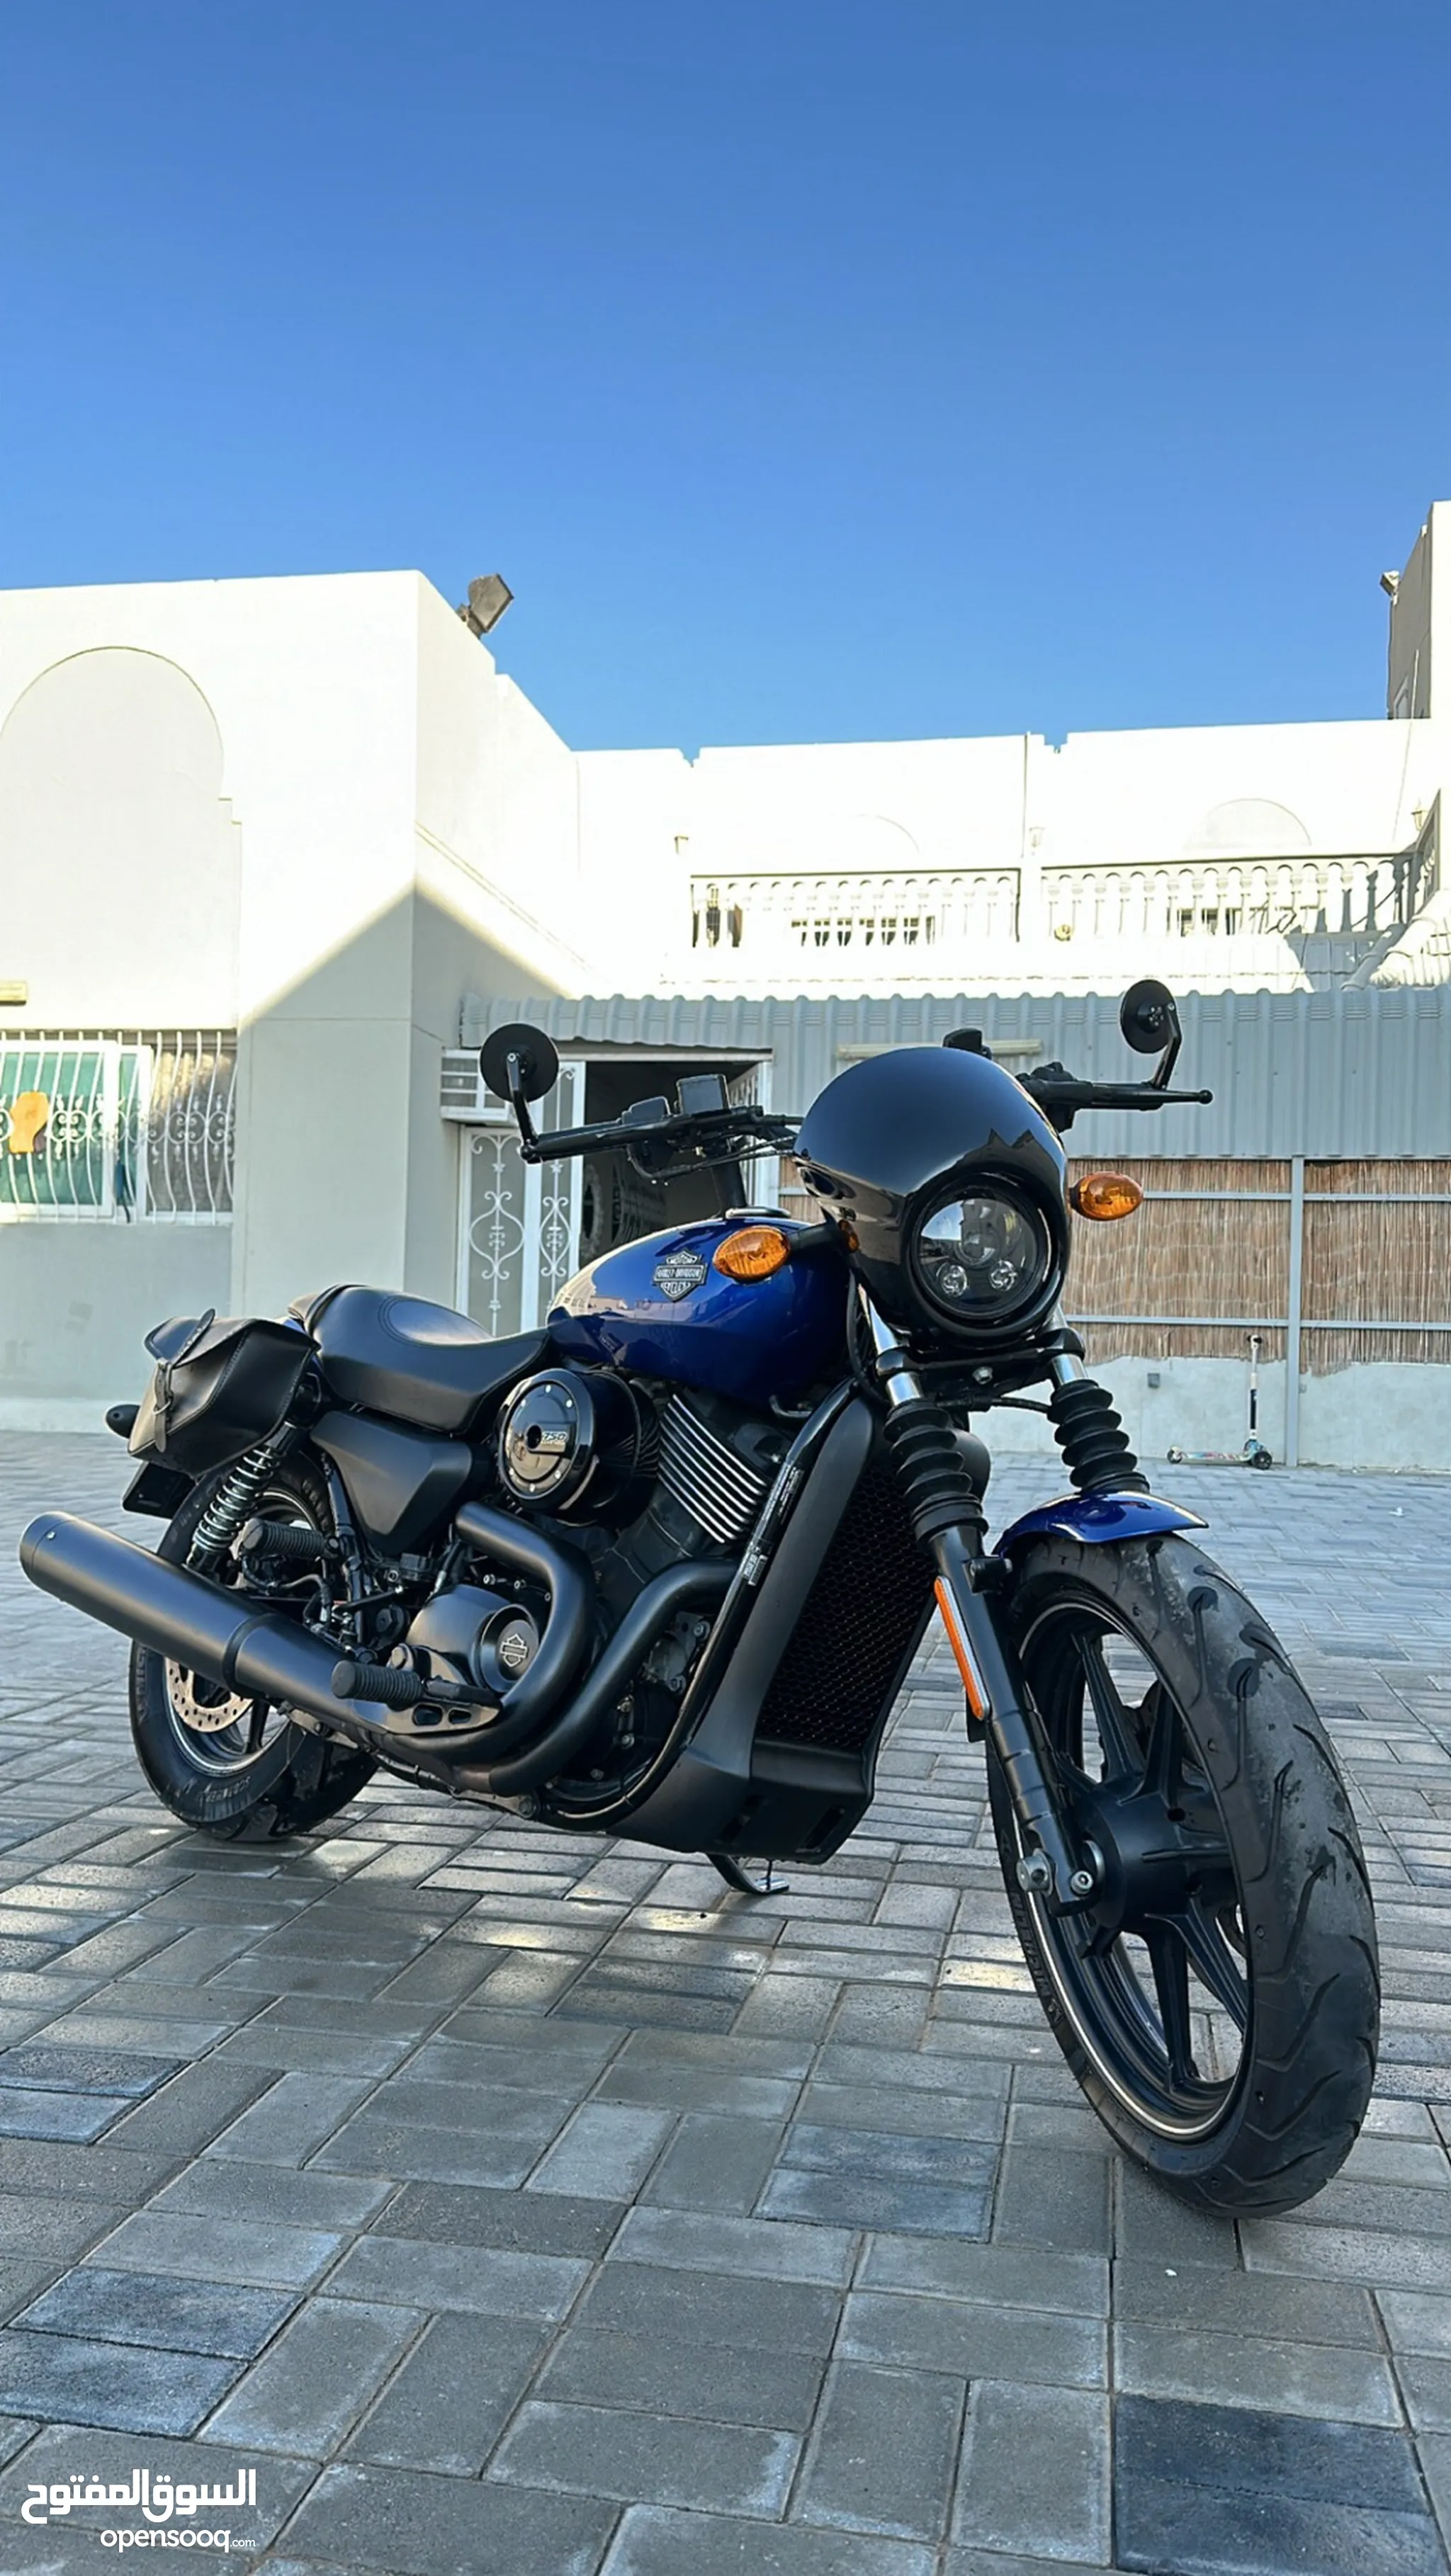 دباب هارلي ديفيدسون Street 750 للبيع في الإمارات : دراجات مستعملة وجديدة :  ارخص الاسعار | السوق المفتوح